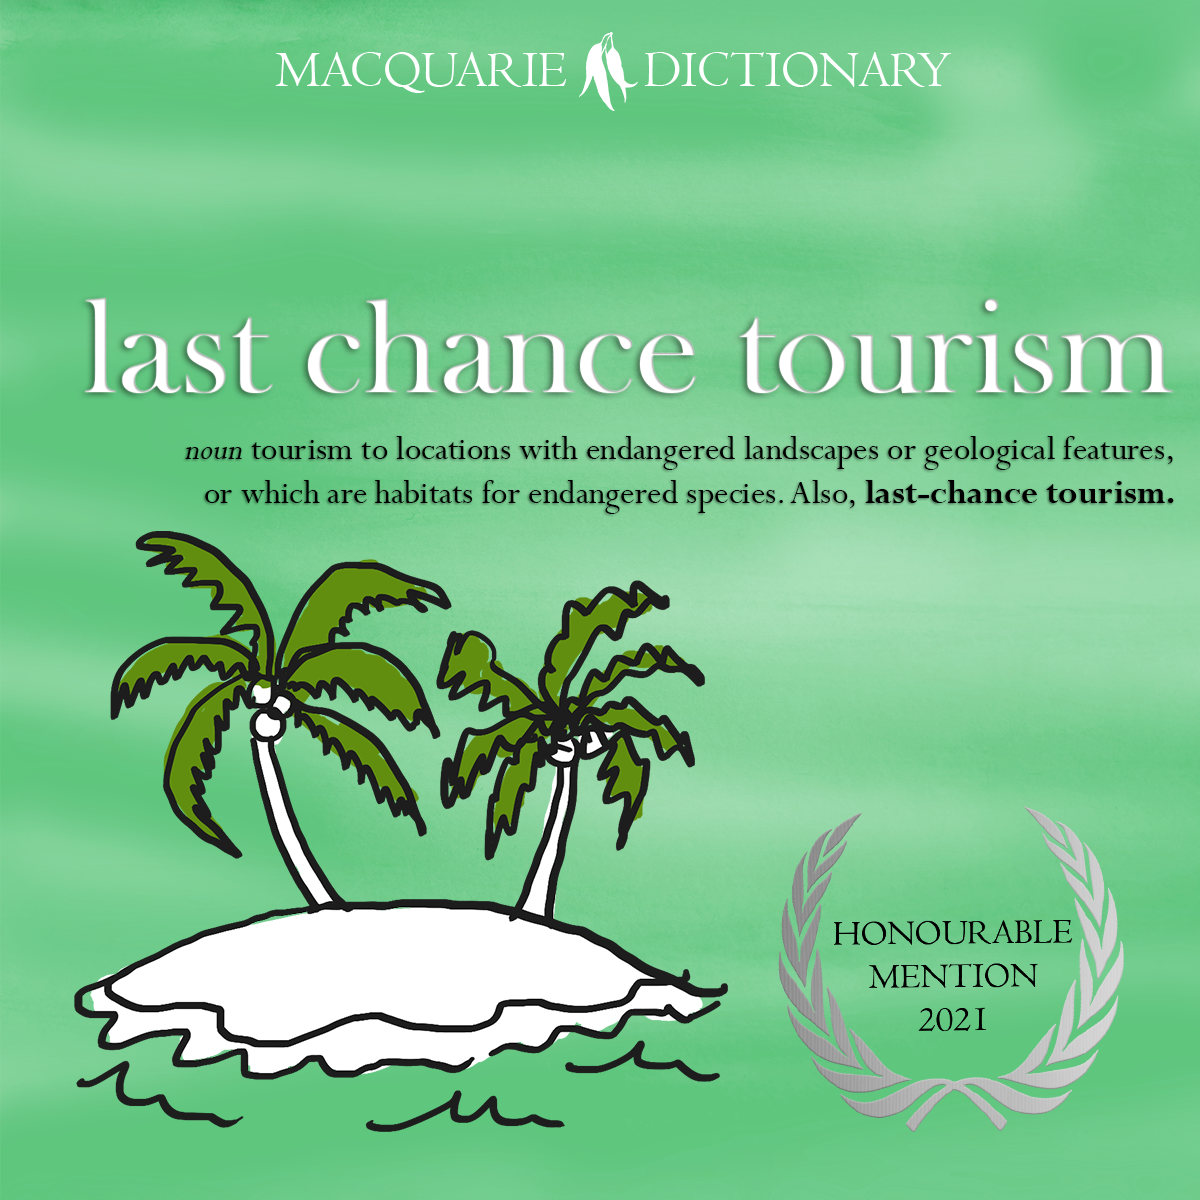 Honourable mention 2021 - last chance tourism